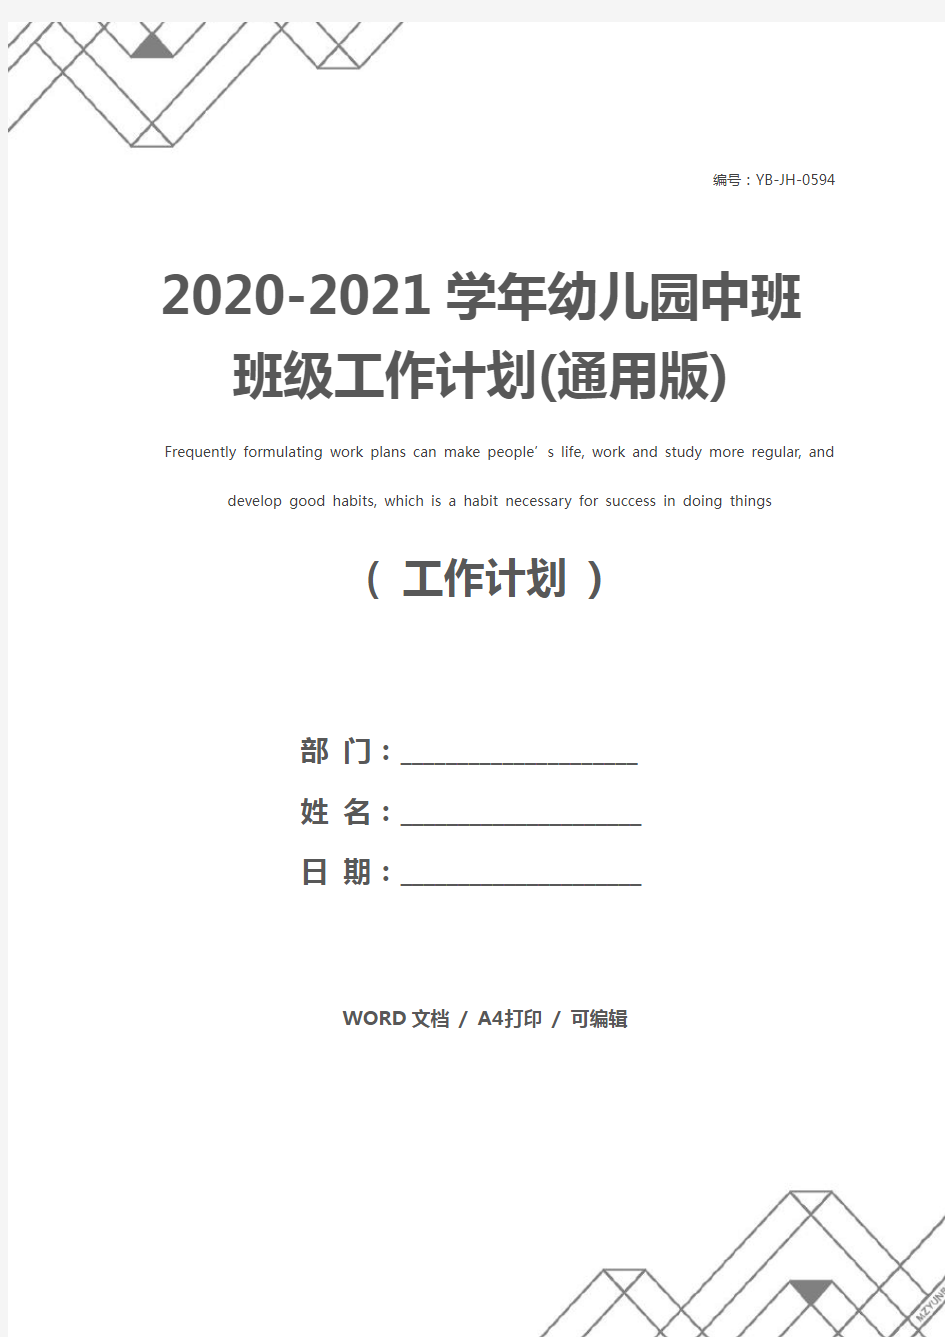 2020-2021学年幼儿园中班班级工作计划(通用版)